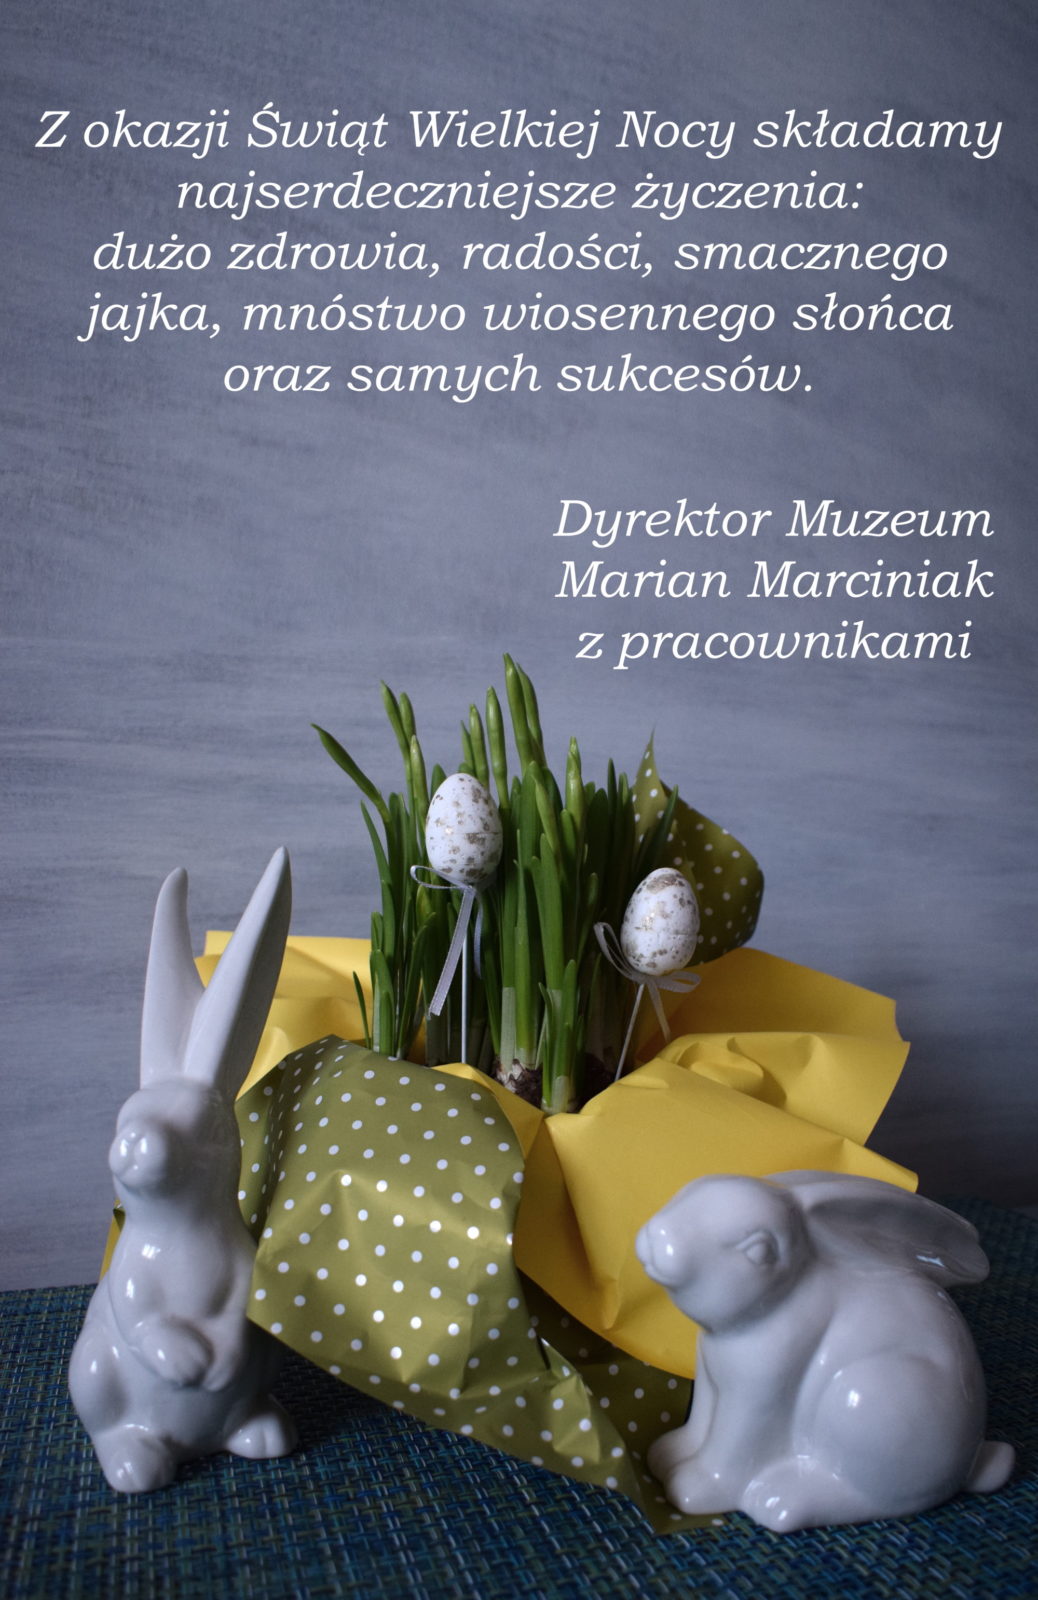 Z okazji Świąt Wielkiej Nocy składamy najserdeczniejsze życzenia: dużo zdrowia, radości, smacznego jajka, mnóstwa słońca oraz samych sukcesów. Dyrektor Muzeum Marian Marciniak z pracownikami.